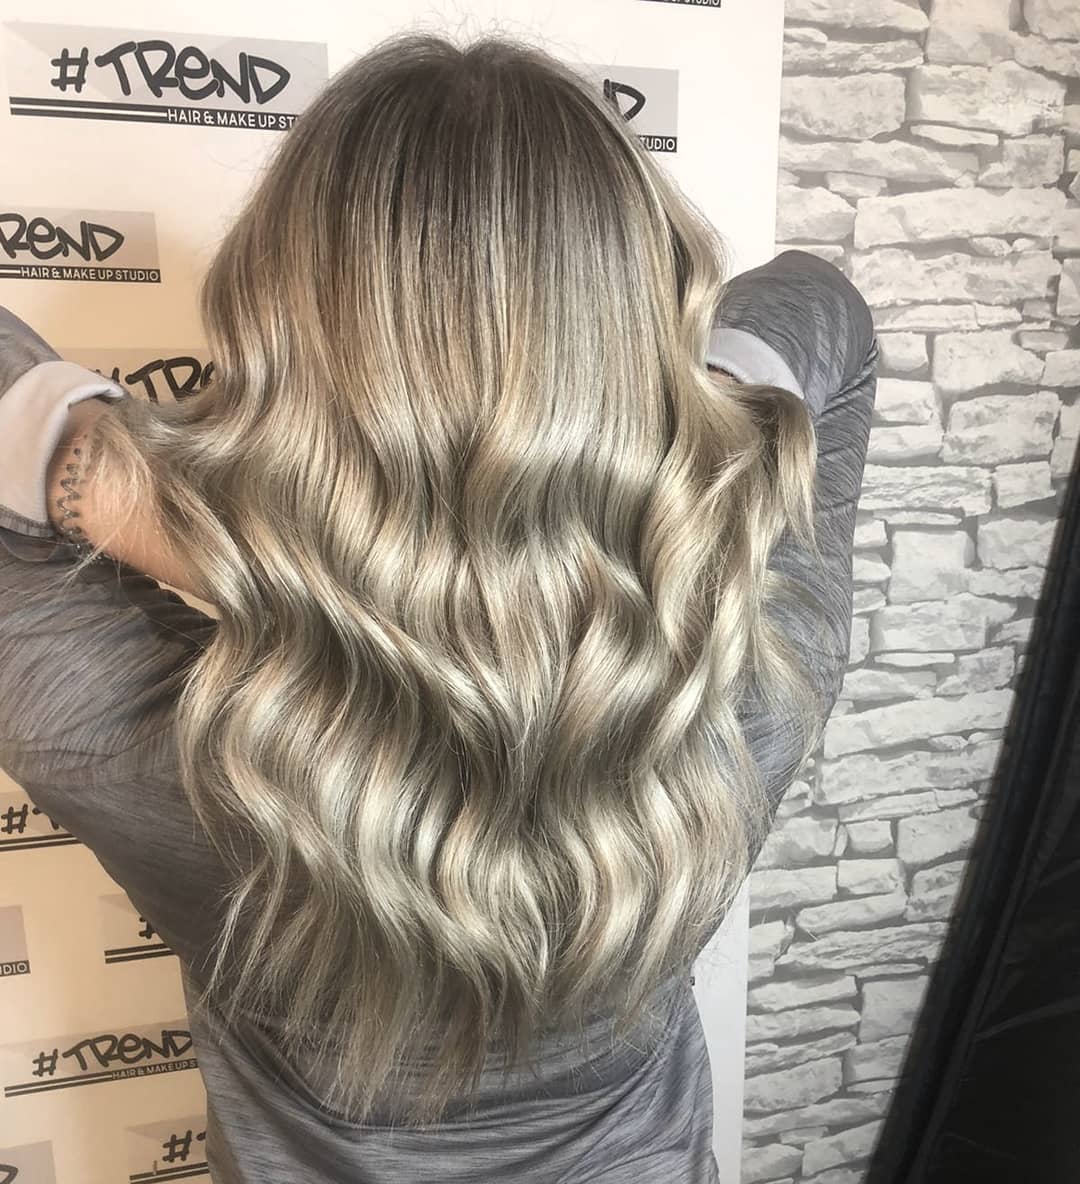 UPDATED] 40+ Dark Roots Blonde Hair Ideas